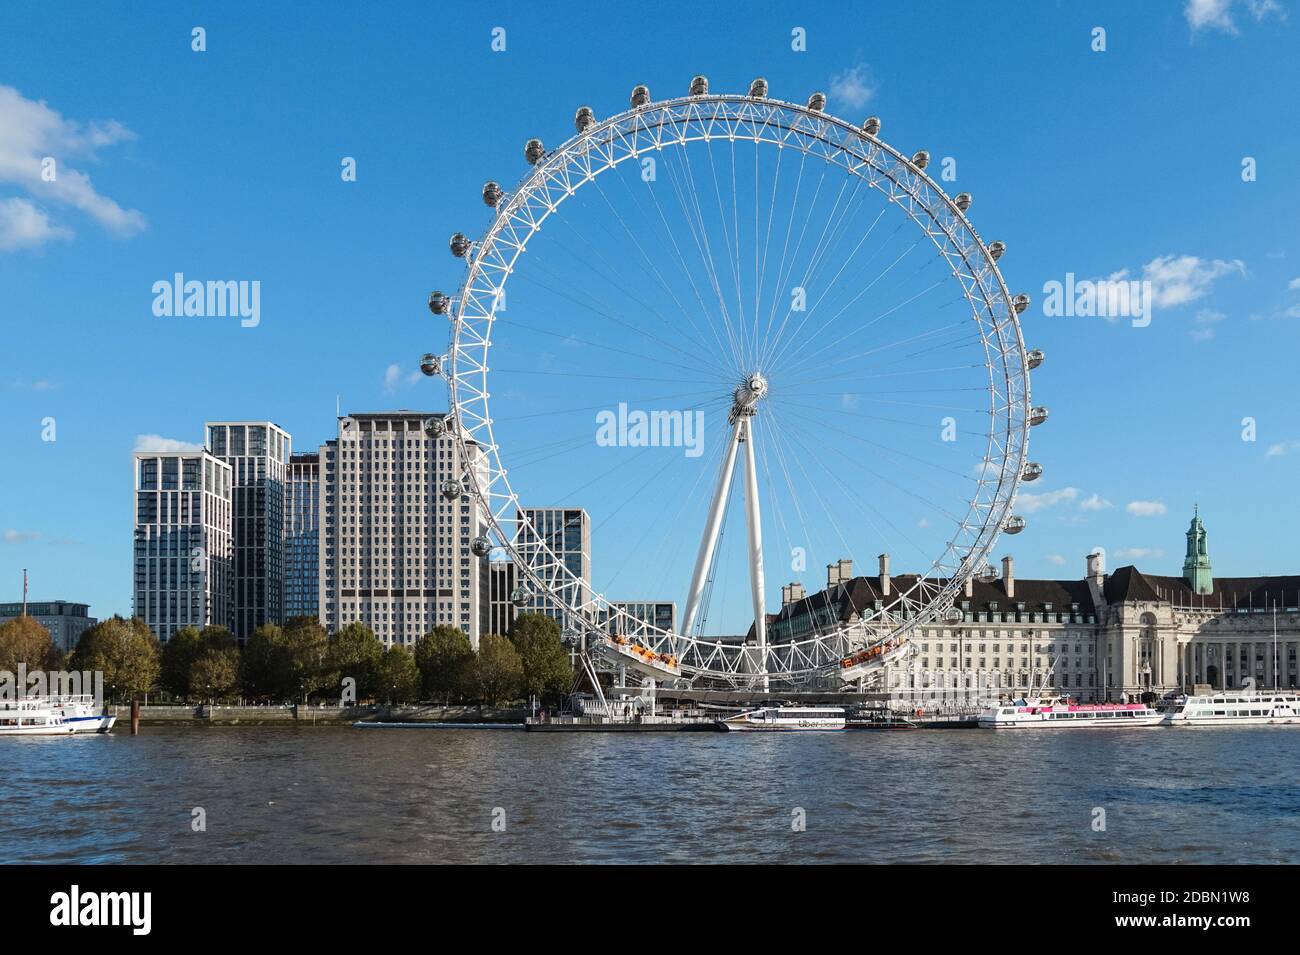 Ruota panoramica London Eye con edifici Southbank Place dietro, Londra Inghilterra Regno Unito Foto Stock